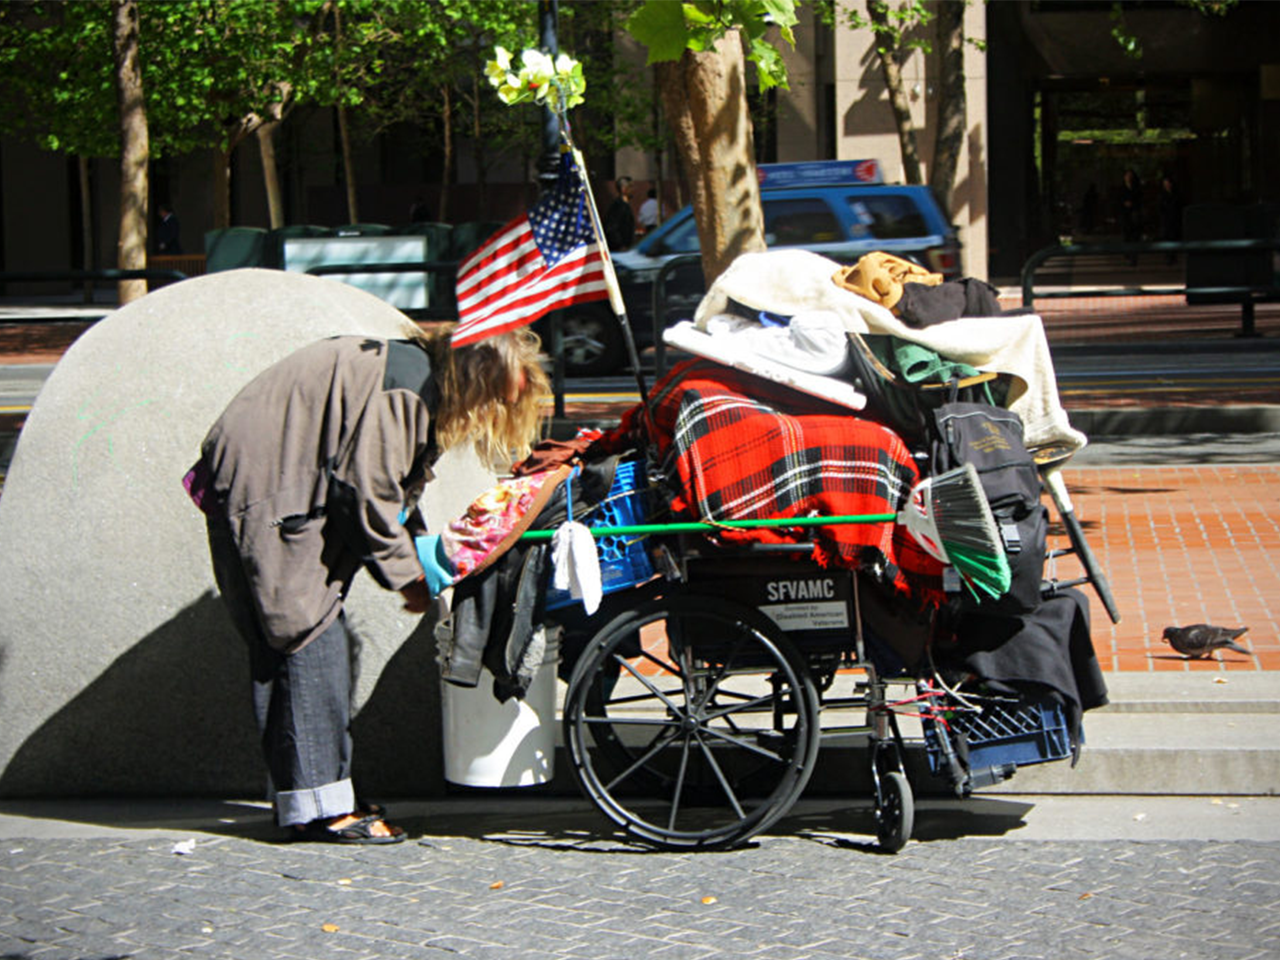 Photographie d'un américain pauvre avec ses affaires dans un chariot roulant